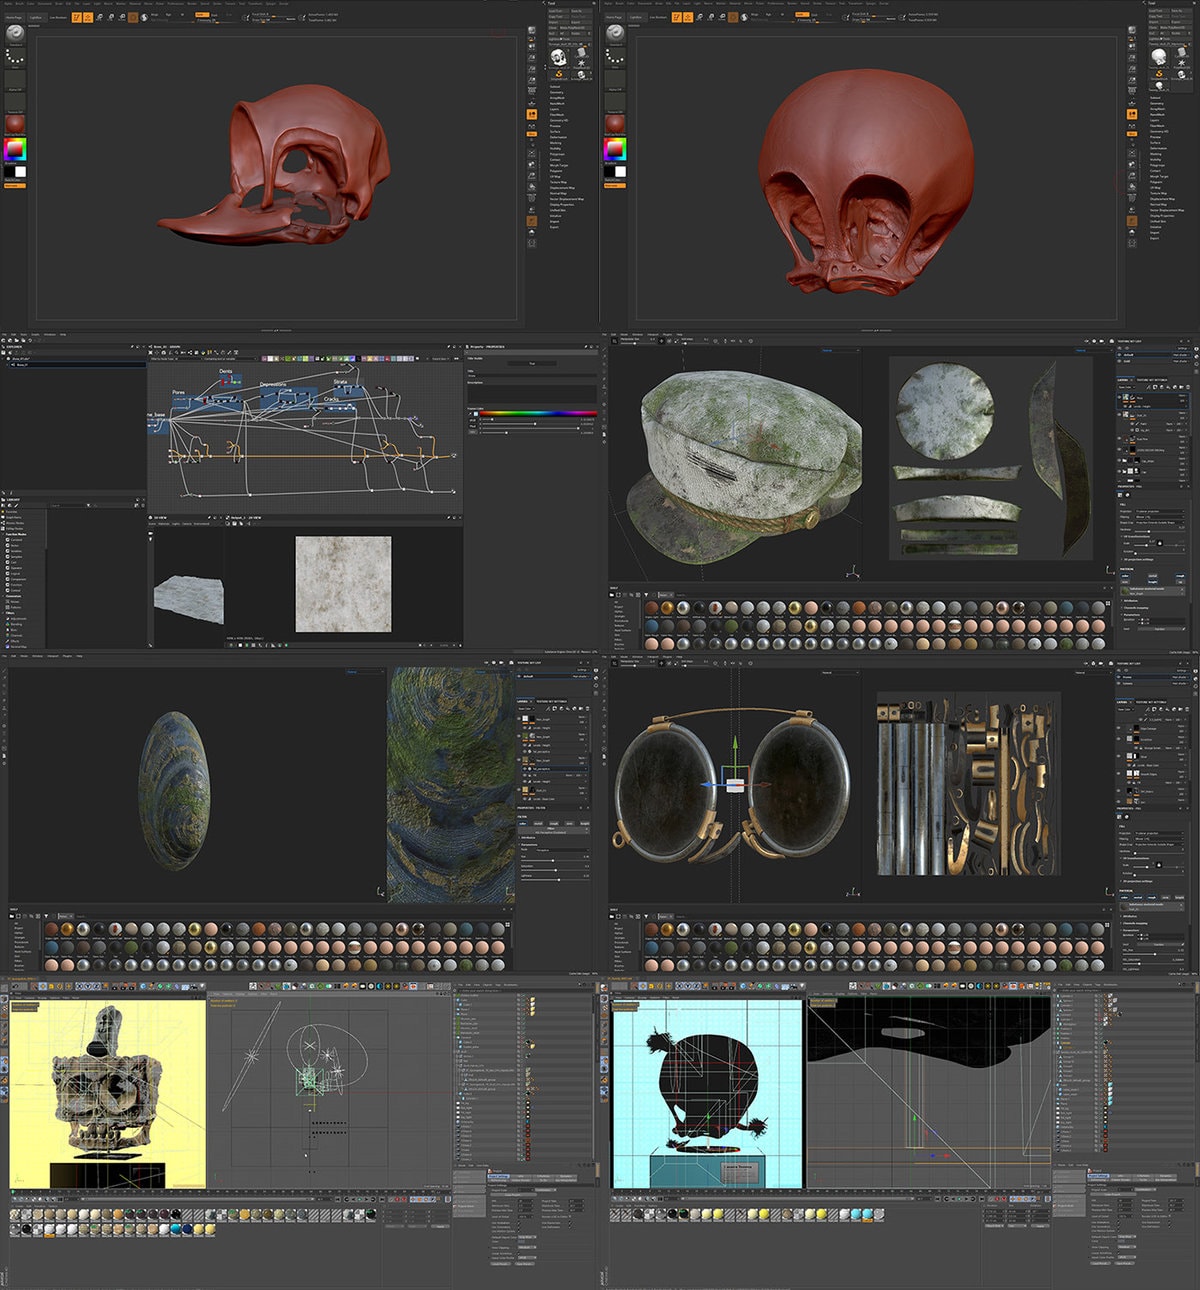 3D-художник создал проект, в котором показал, как могли бы выглядеть черепа персонажей известных мультфильмов 52